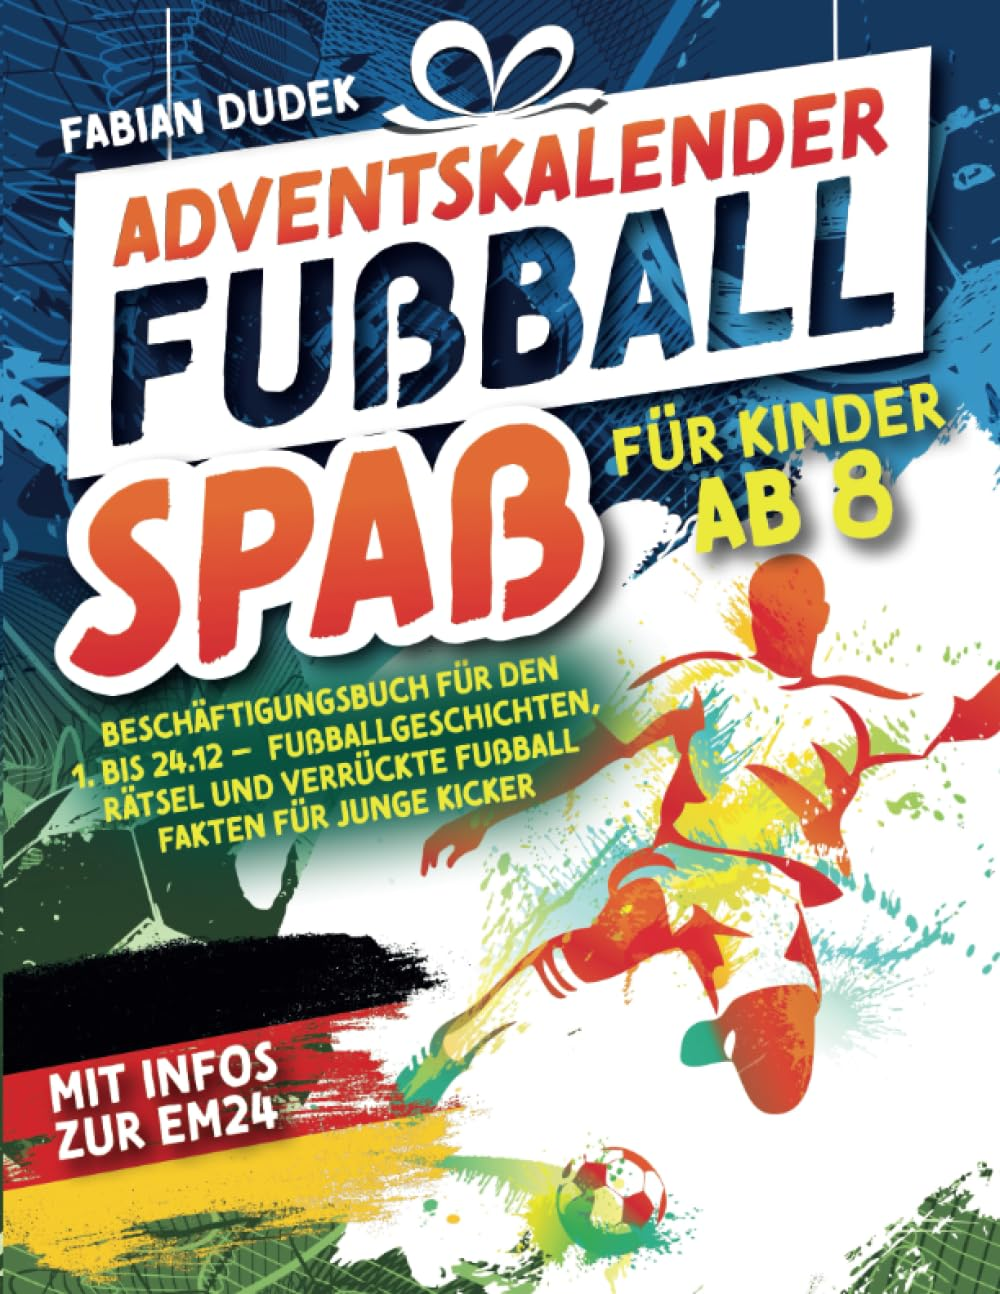 Adventskalender "Fußball Spaß für Kinder ab 8" – Beschäftigungsbuch für den 1. bis 24.12.